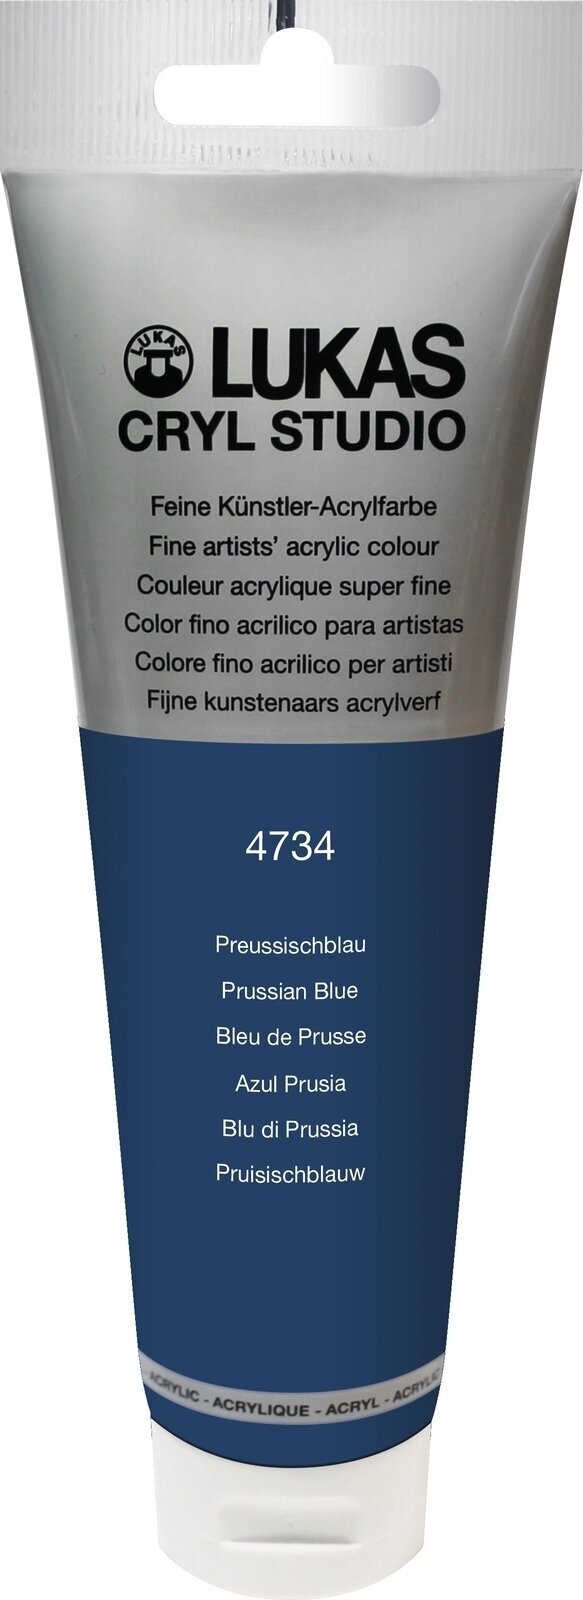 Tinta acrílica Lukas Cryl Studio Acrylic Paint Plastic Tube Tinta acrílica Prussian Blue 125 ml 1 un.